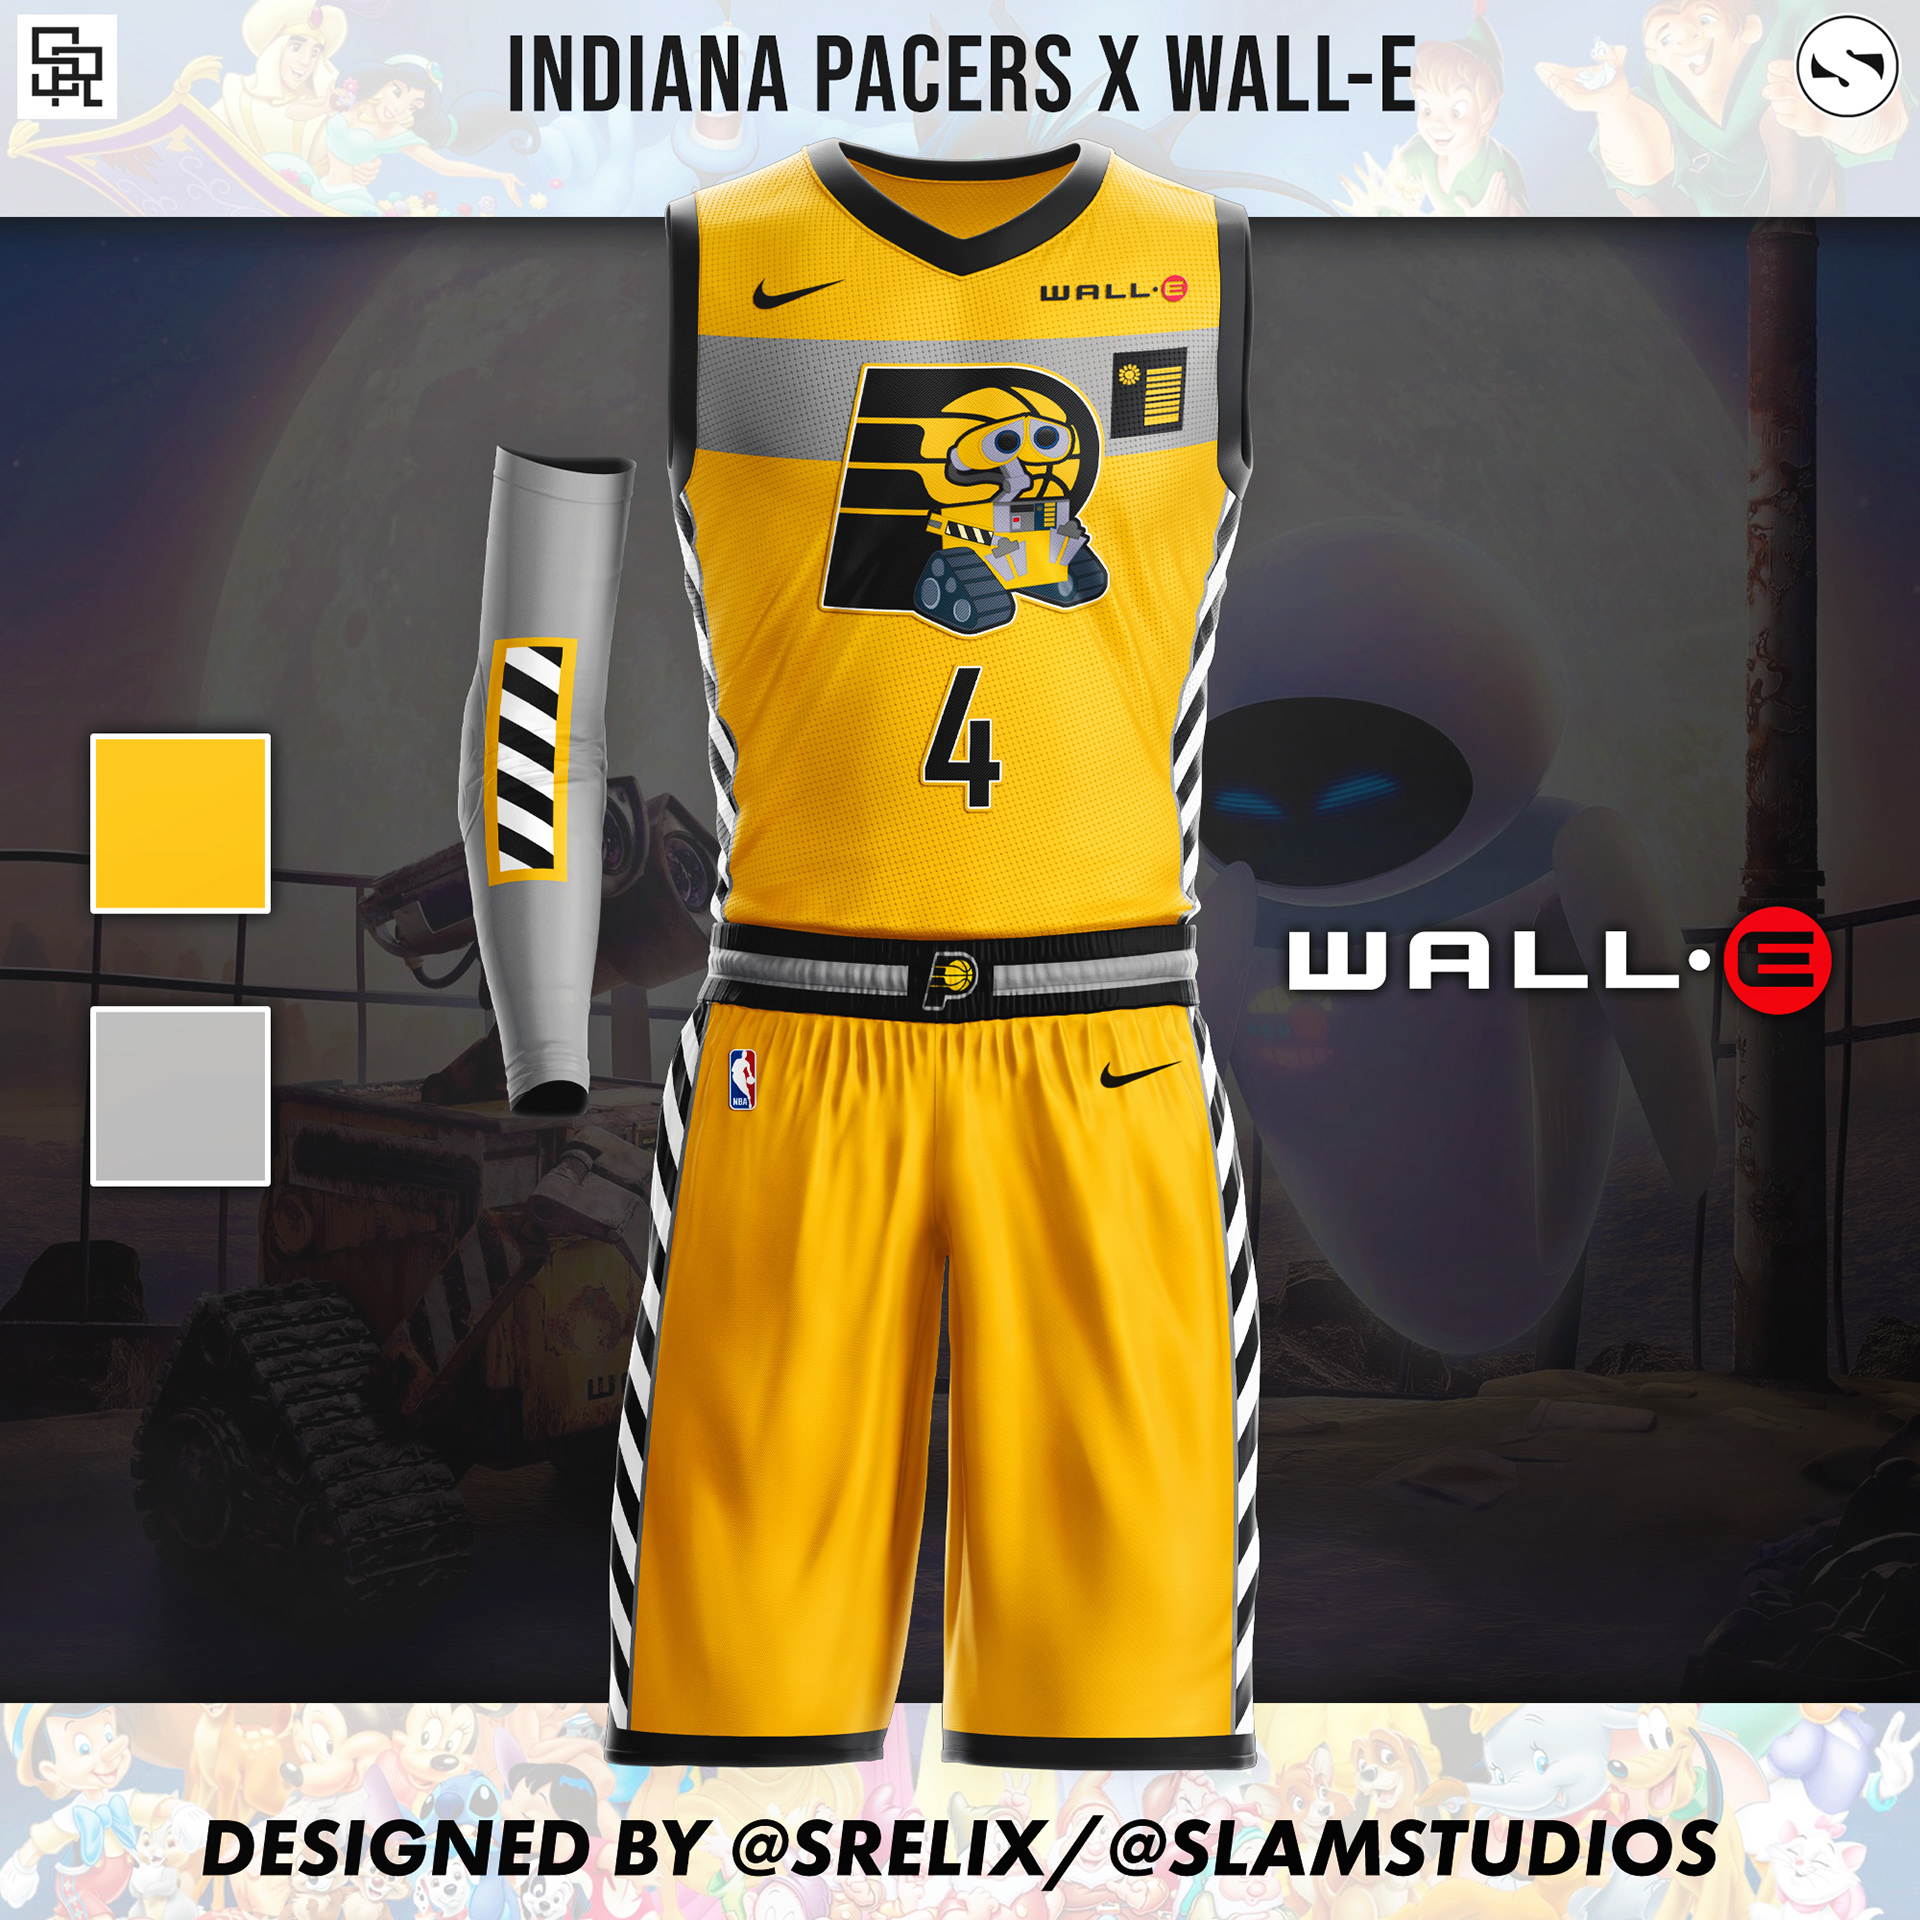 NBA x Candy jersey concepts 🔥🍬 (via @jerseyxswap)